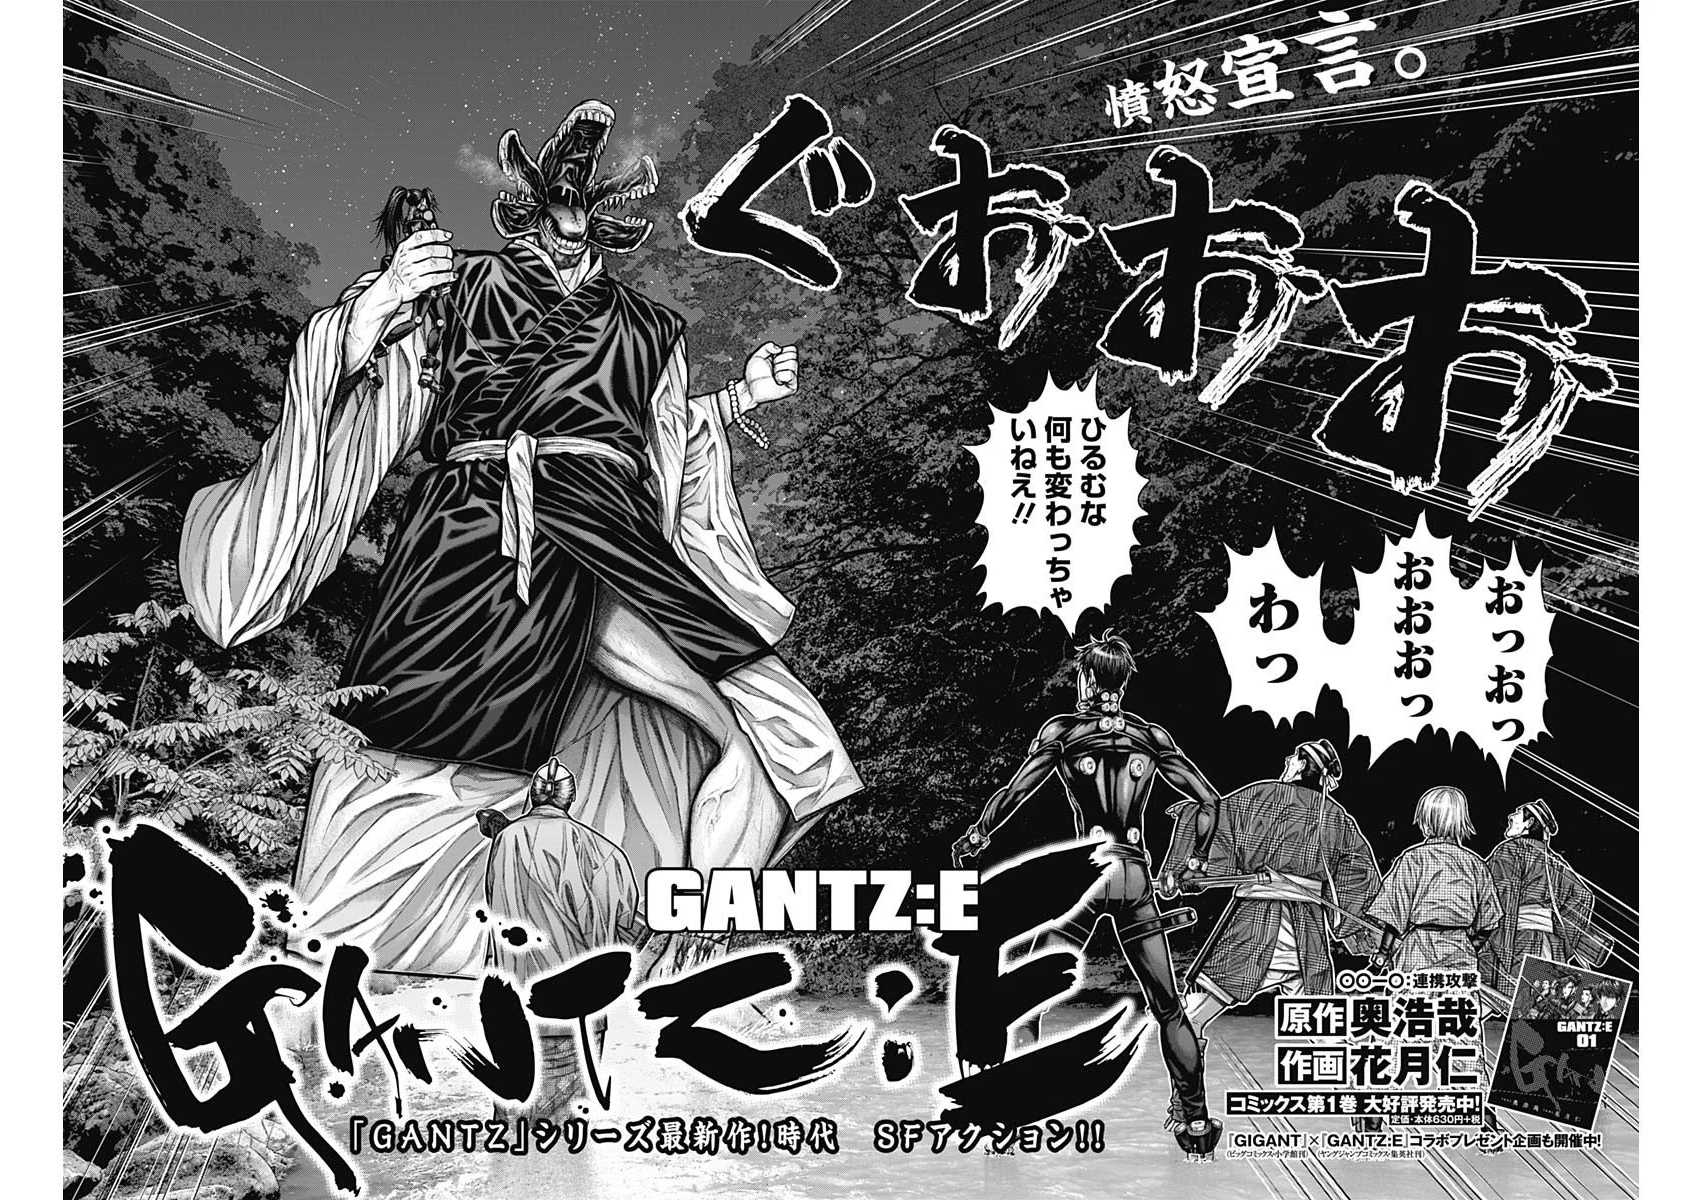 生肉 怪獸8號第9話 Gantz E 第10話生肉大圖 漫畫版 Jkf 捷克論壇